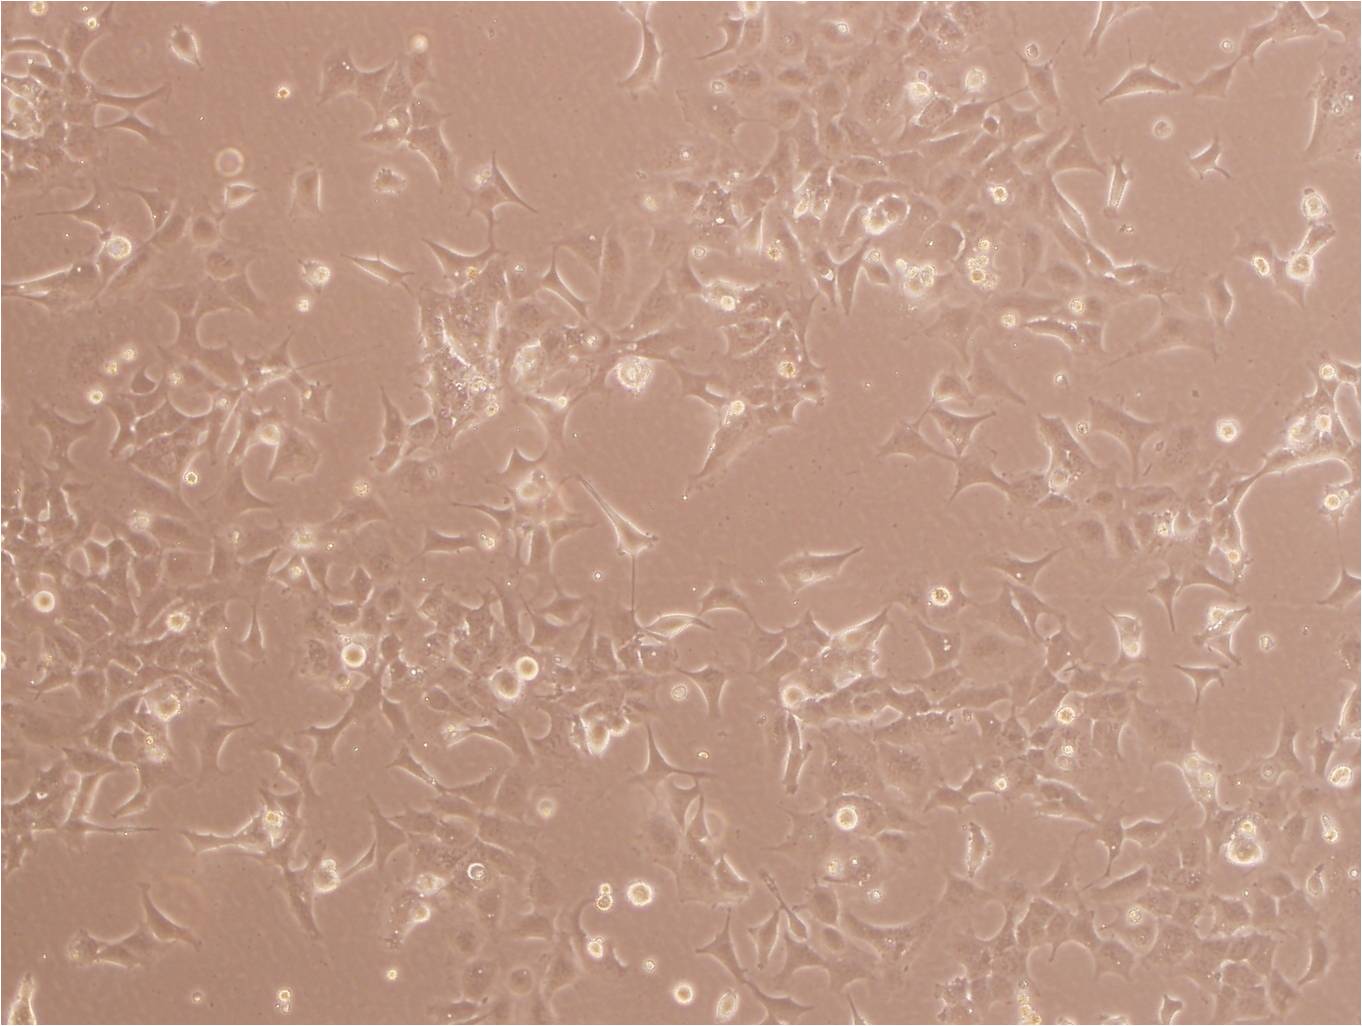 U-373MG ATCC人胶质瘤复苏细胞(附STR鉴定报告)